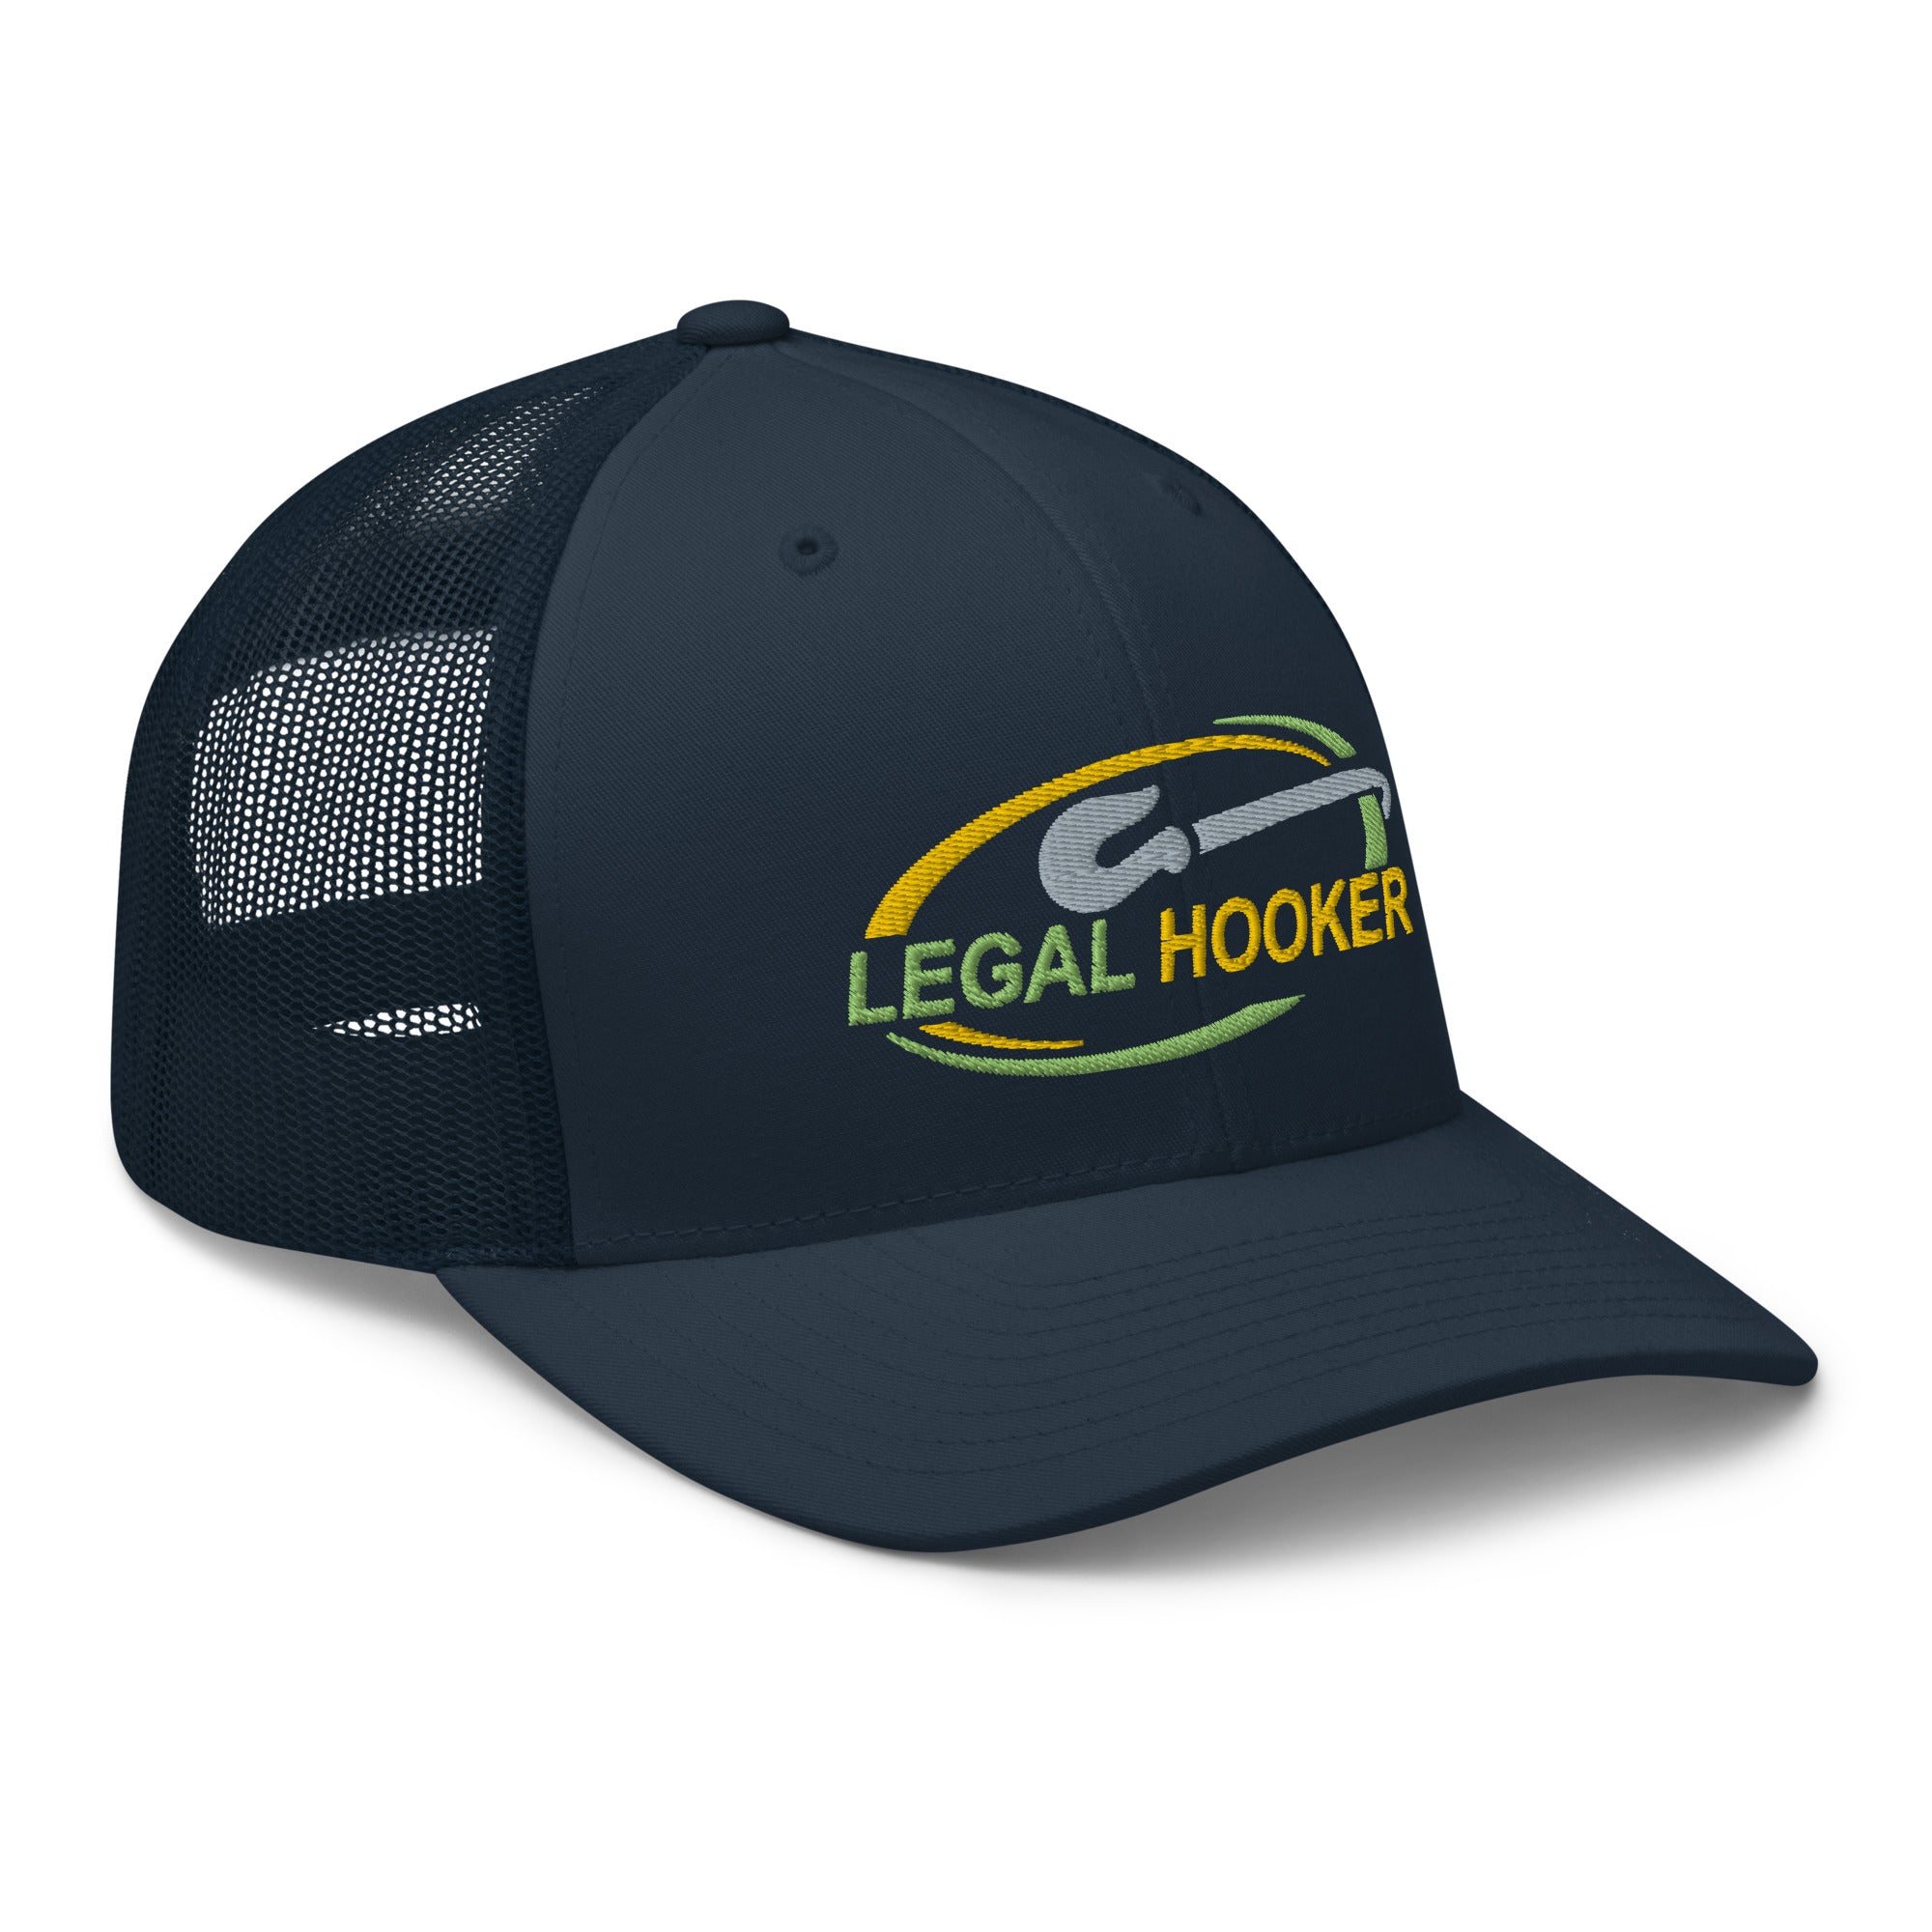 Hooker Trucker Hats